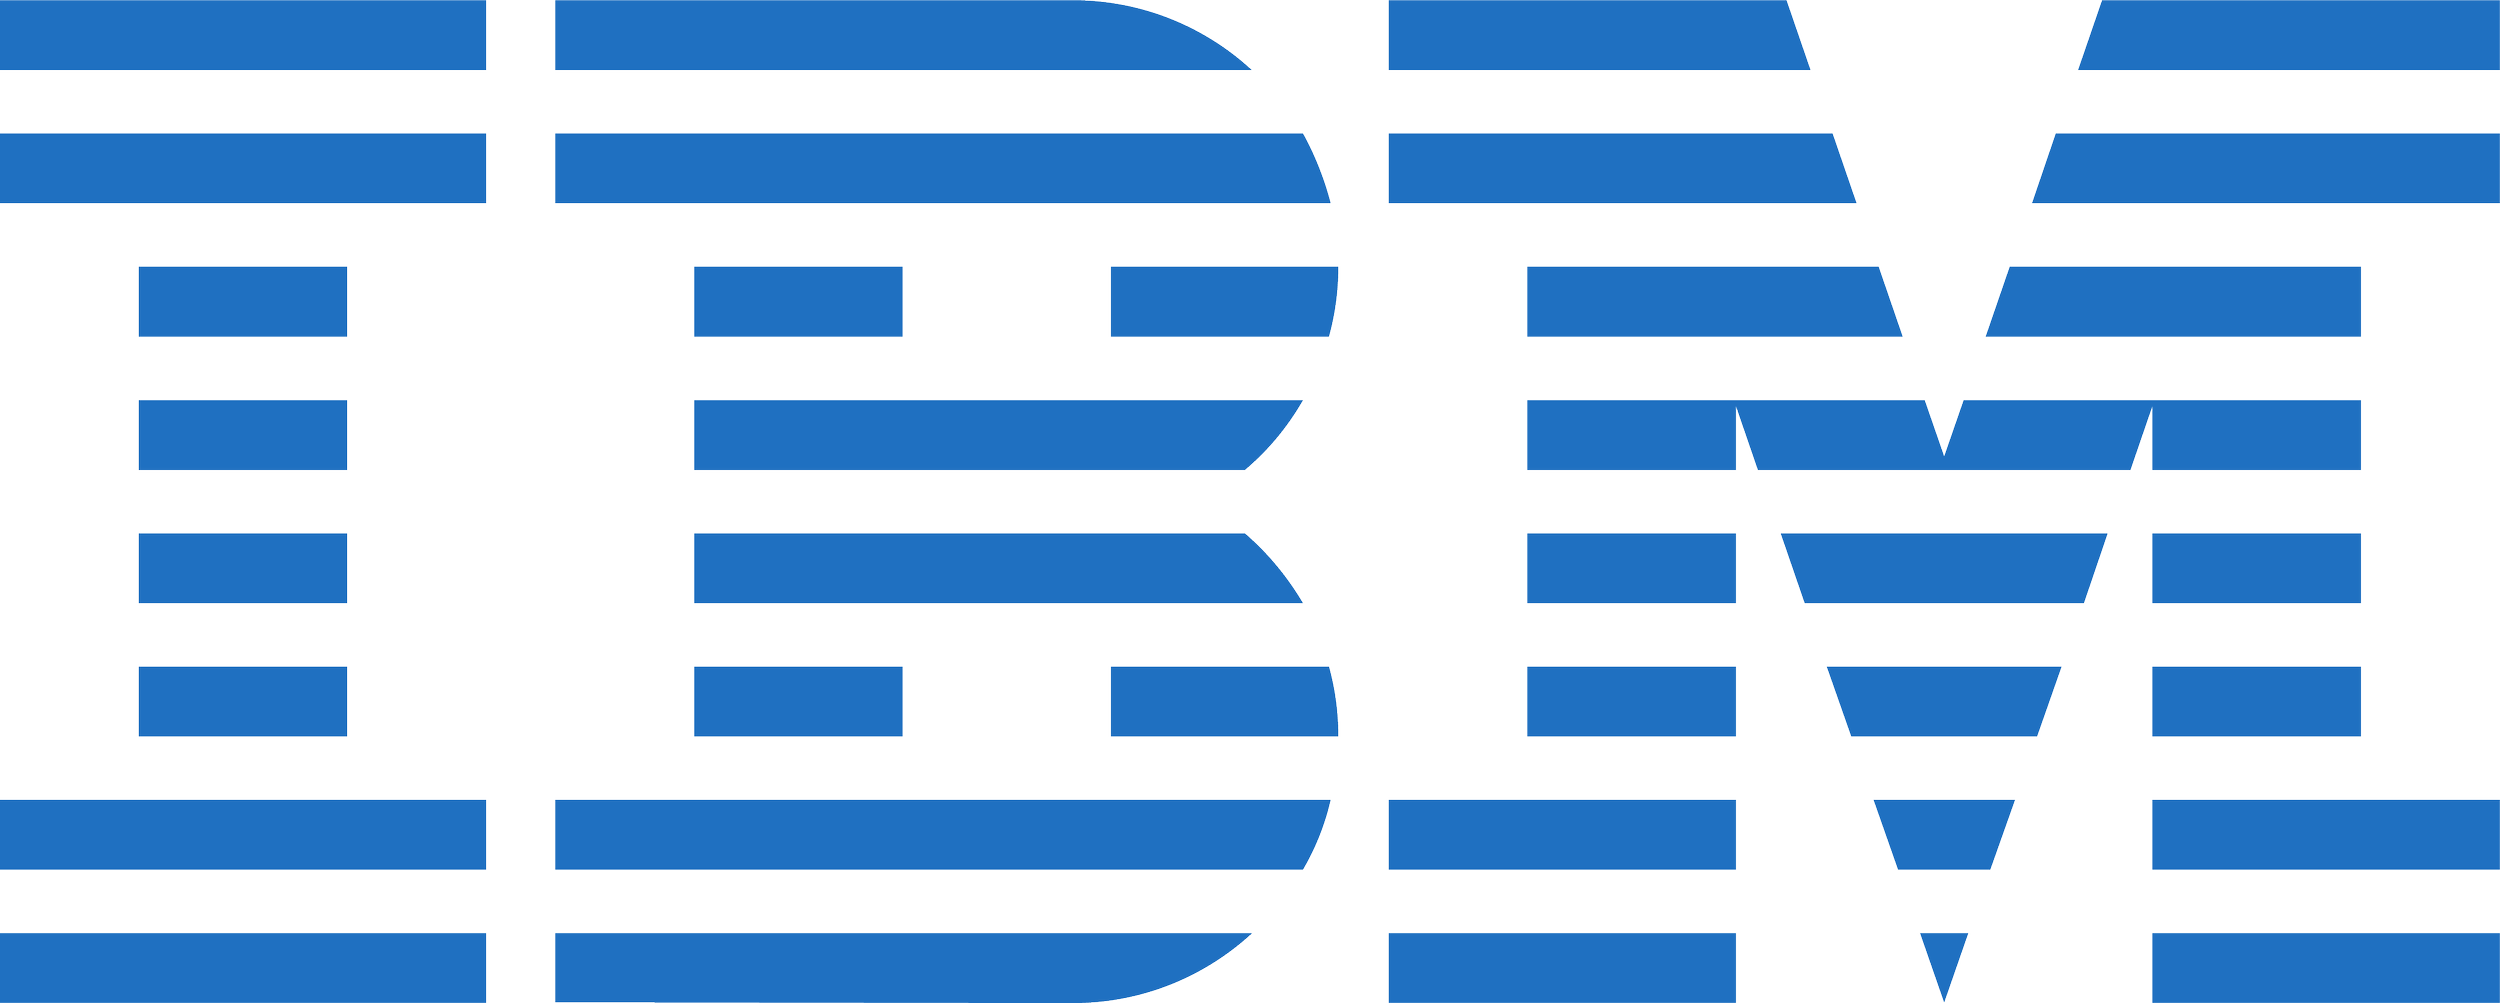 IBM_logo1-01.png